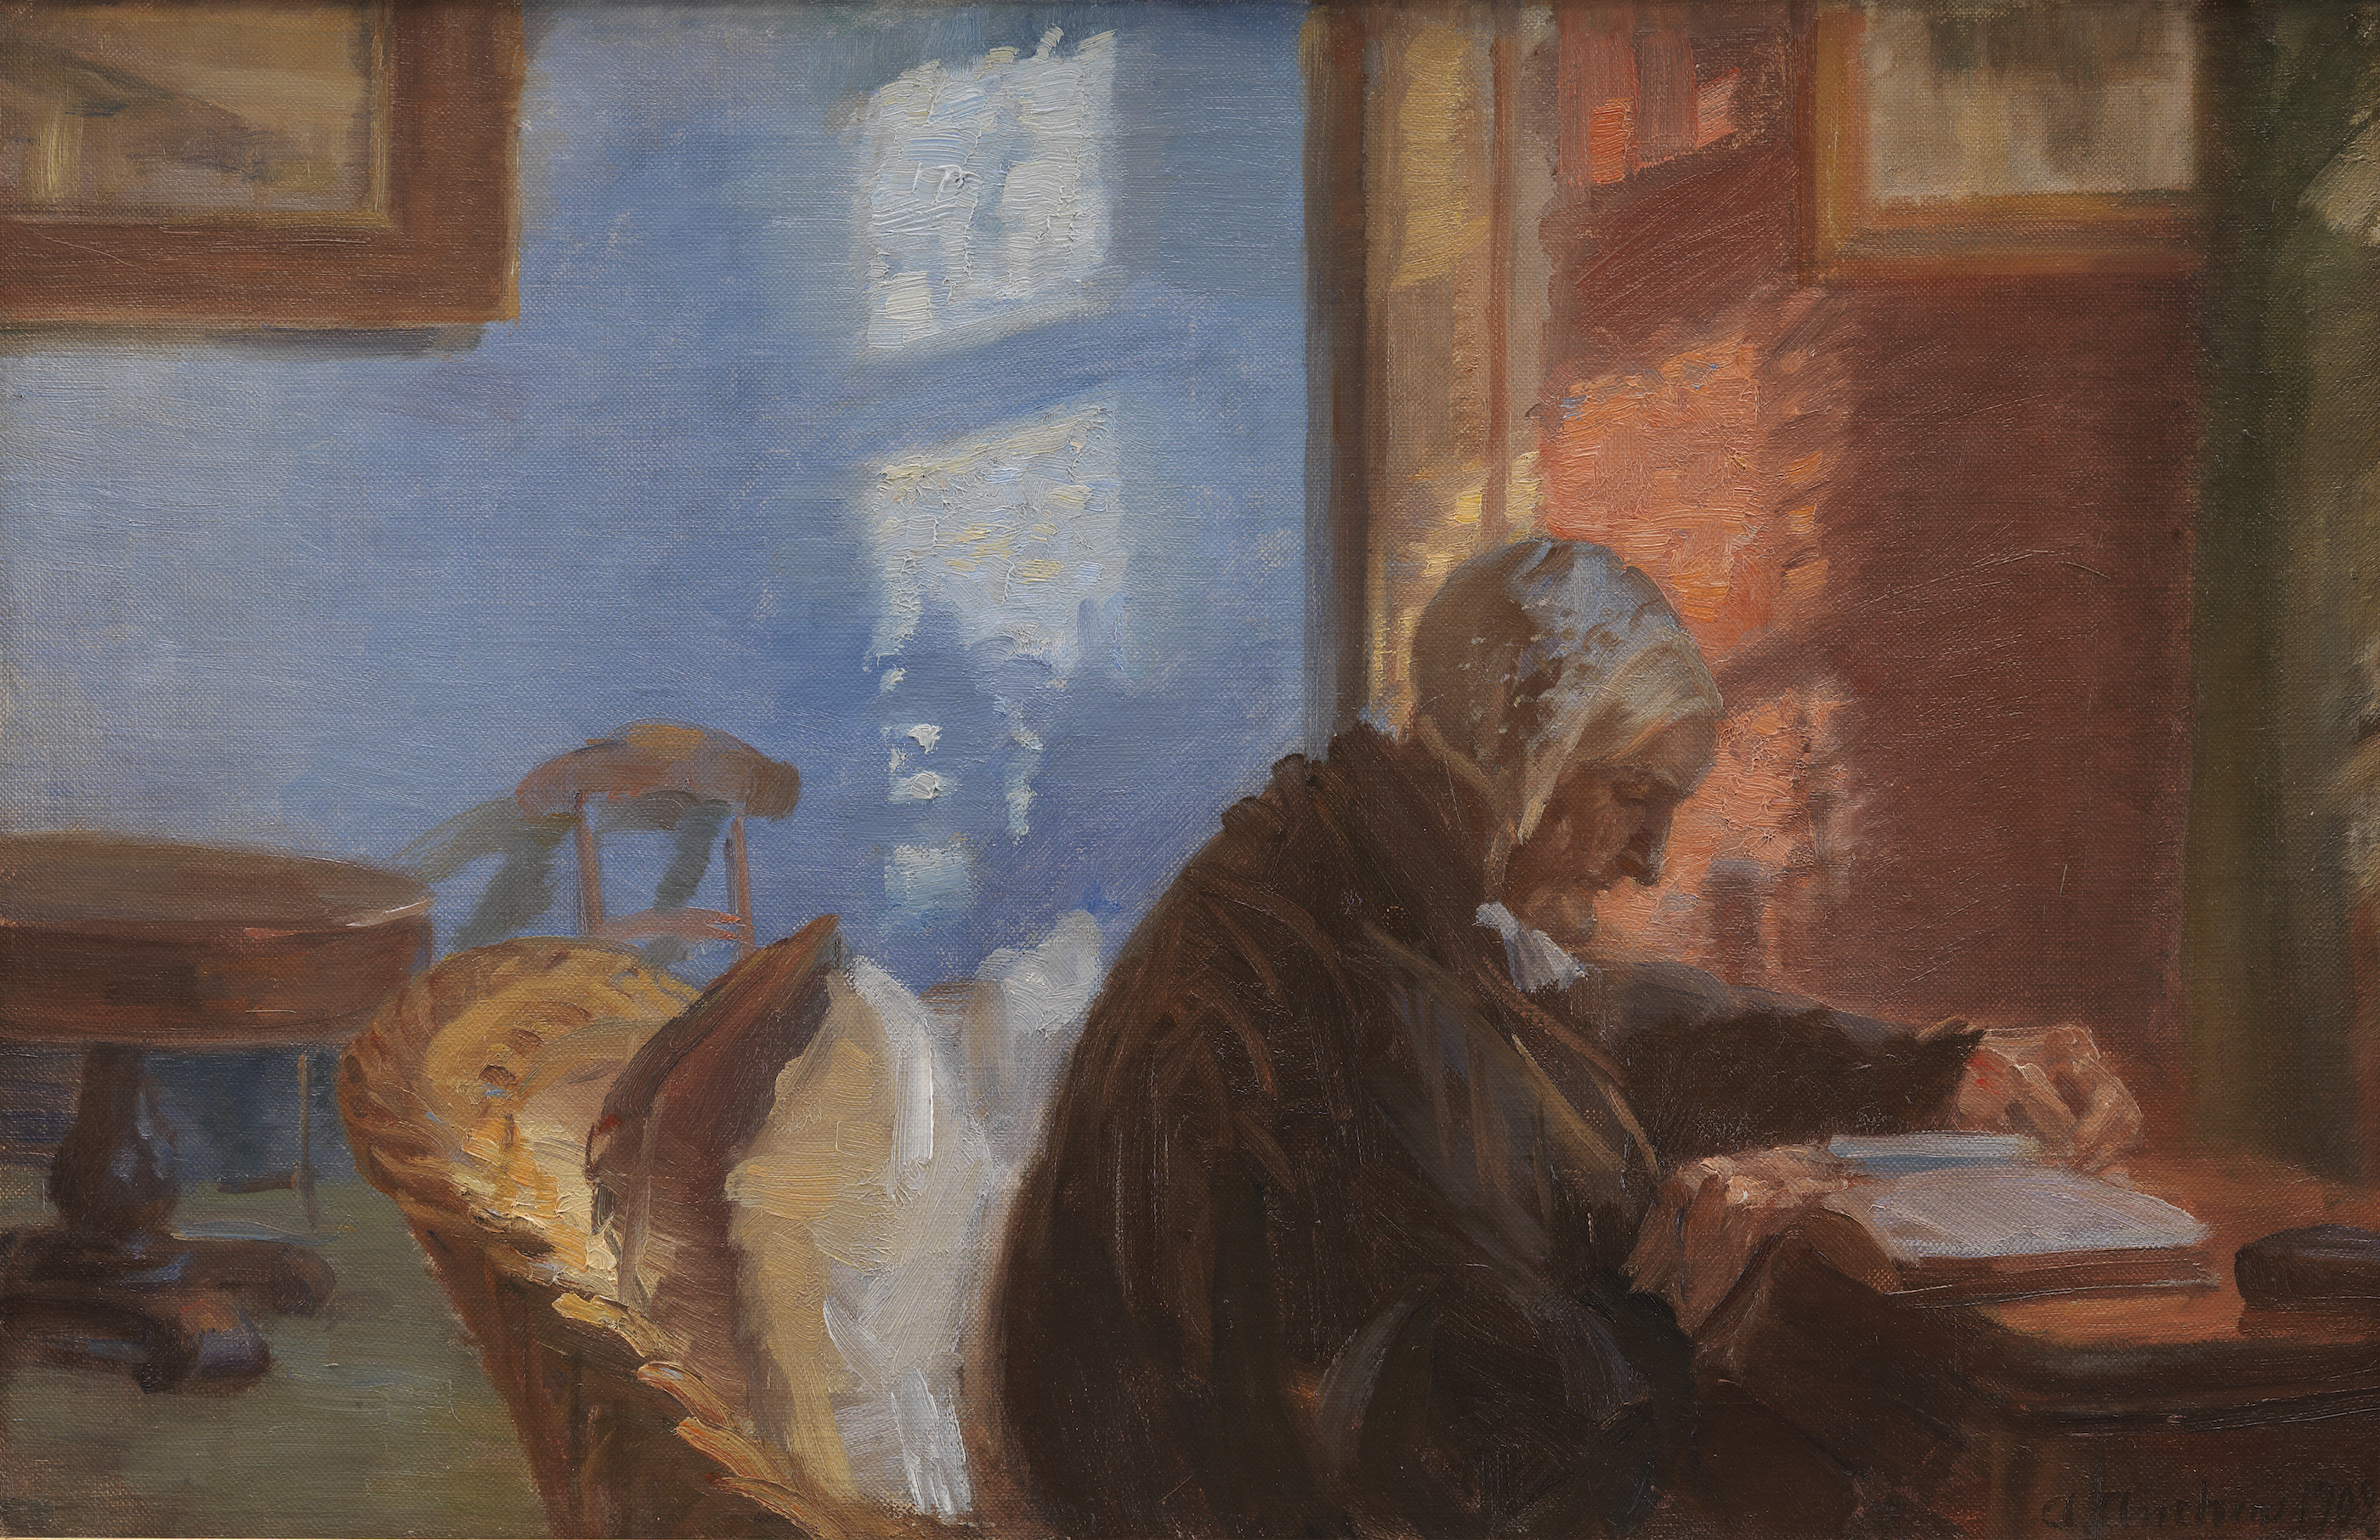 Matka artystki Ane Hedvig Brøndum w niebieskim pokoju by Anna Ancher - 1909 - 38,8 x 56,8 cm 